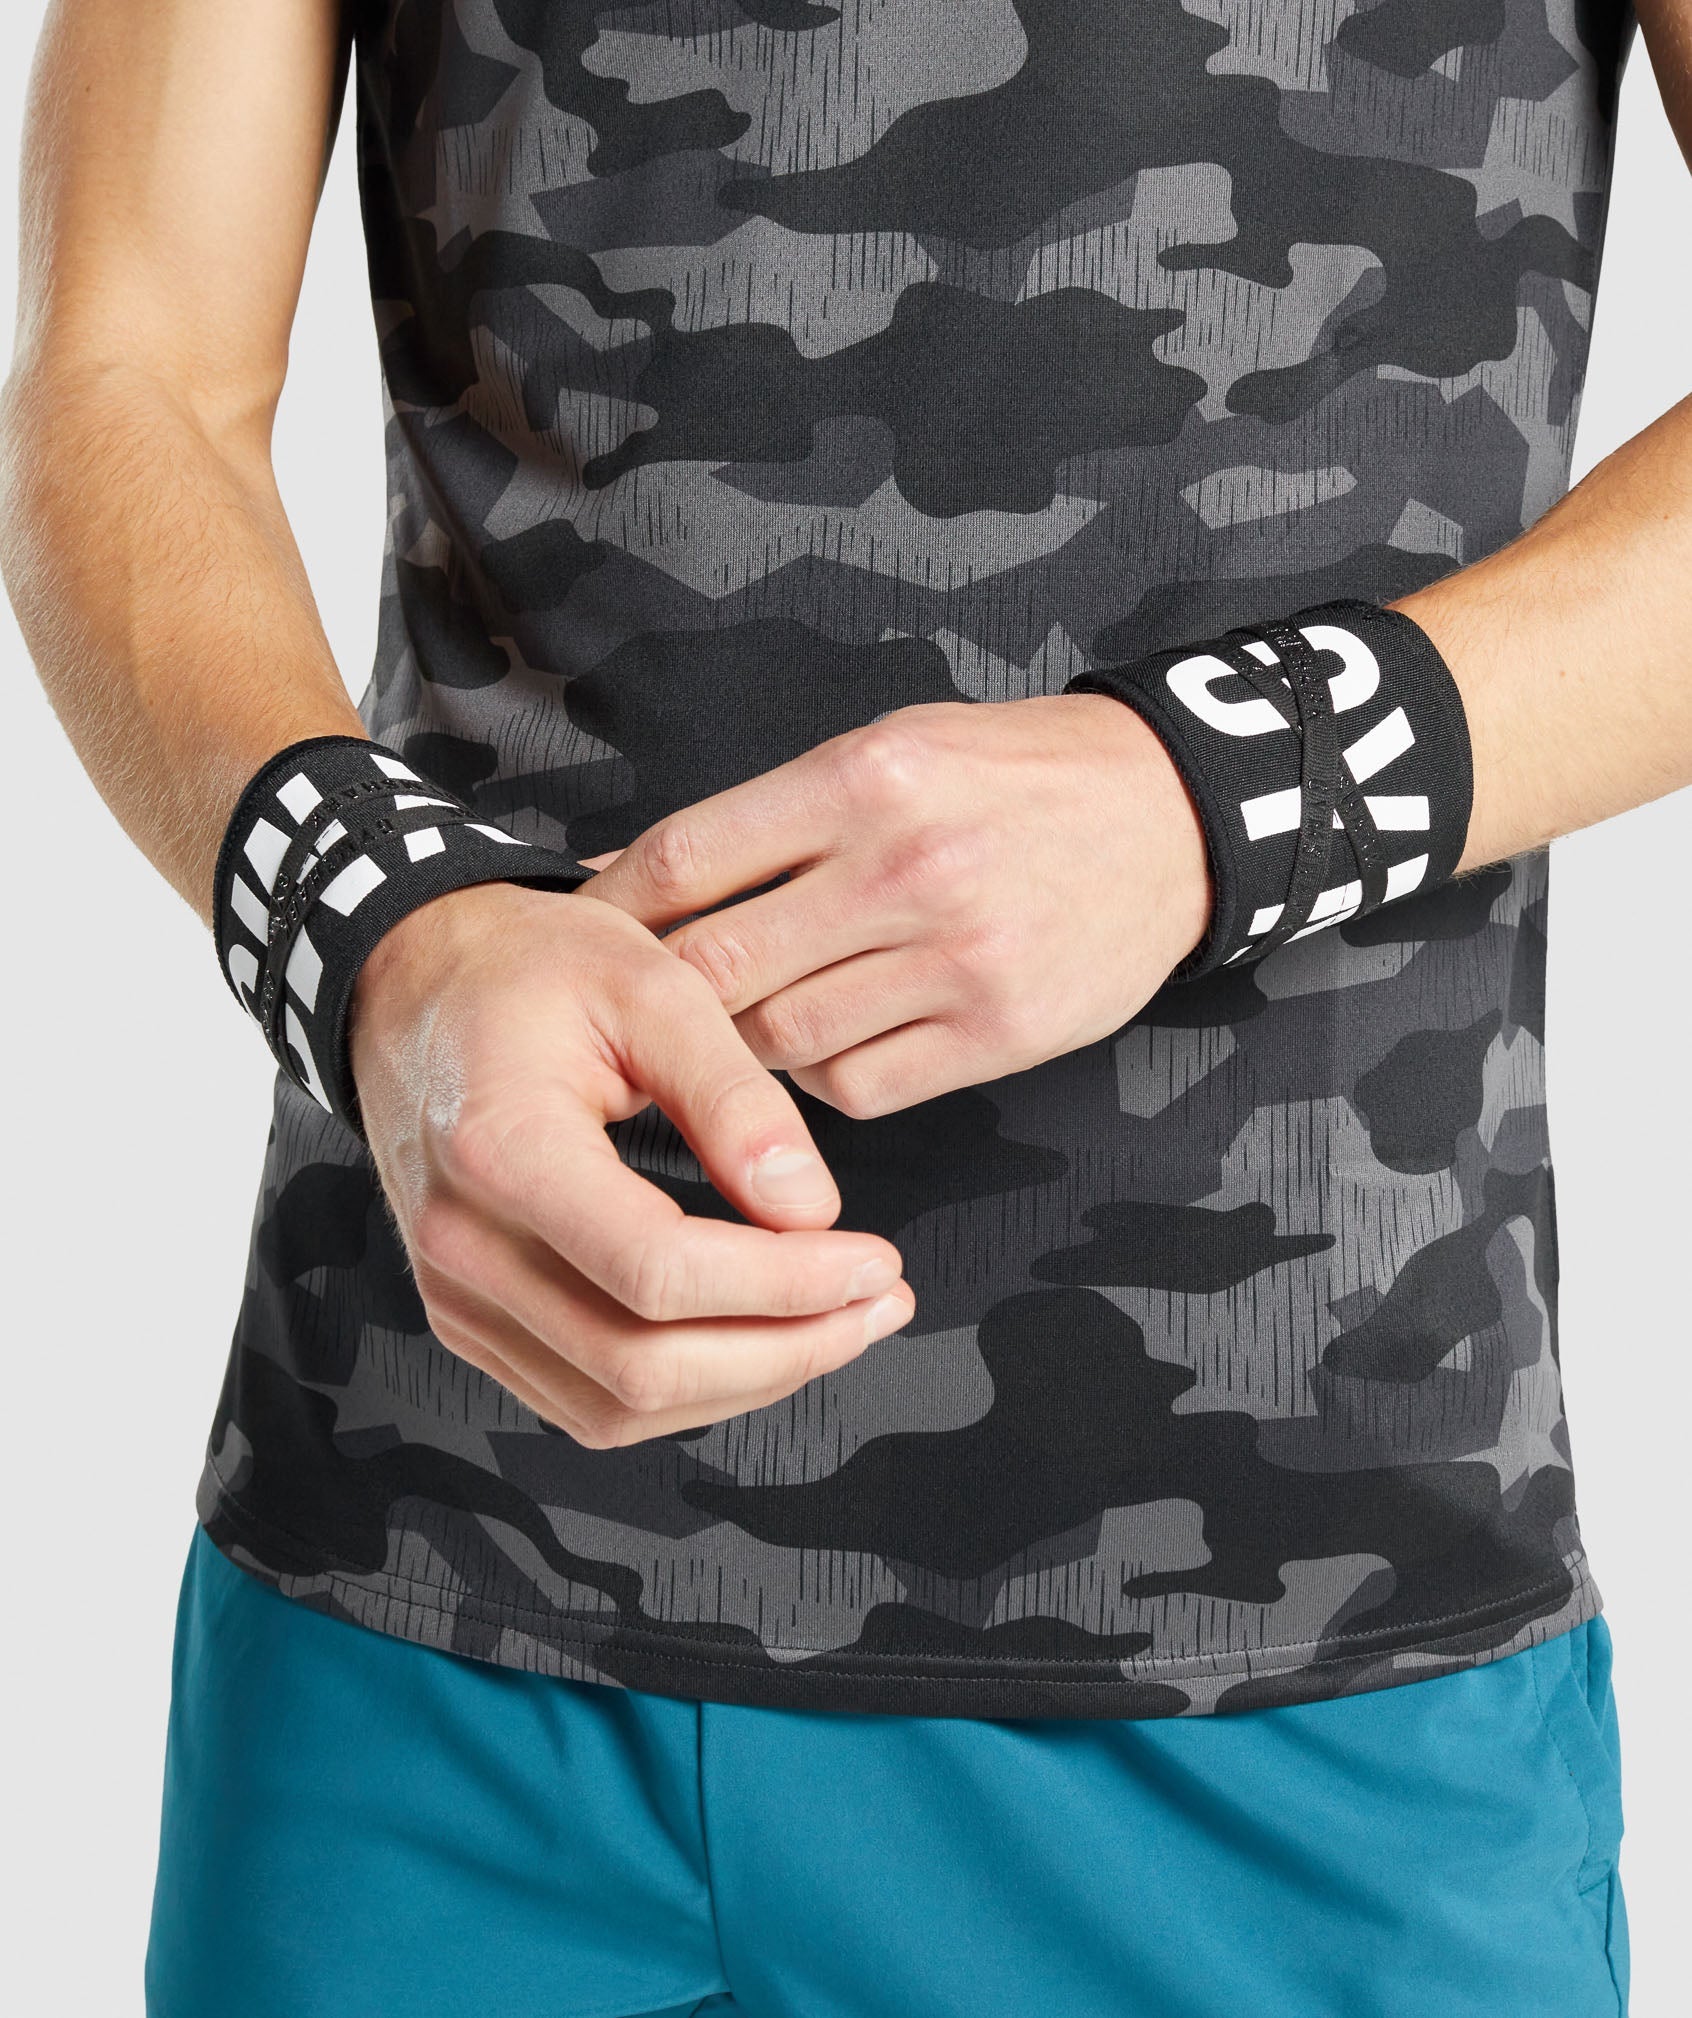 Poignet de force musculation - Wrist straps, gris foncé